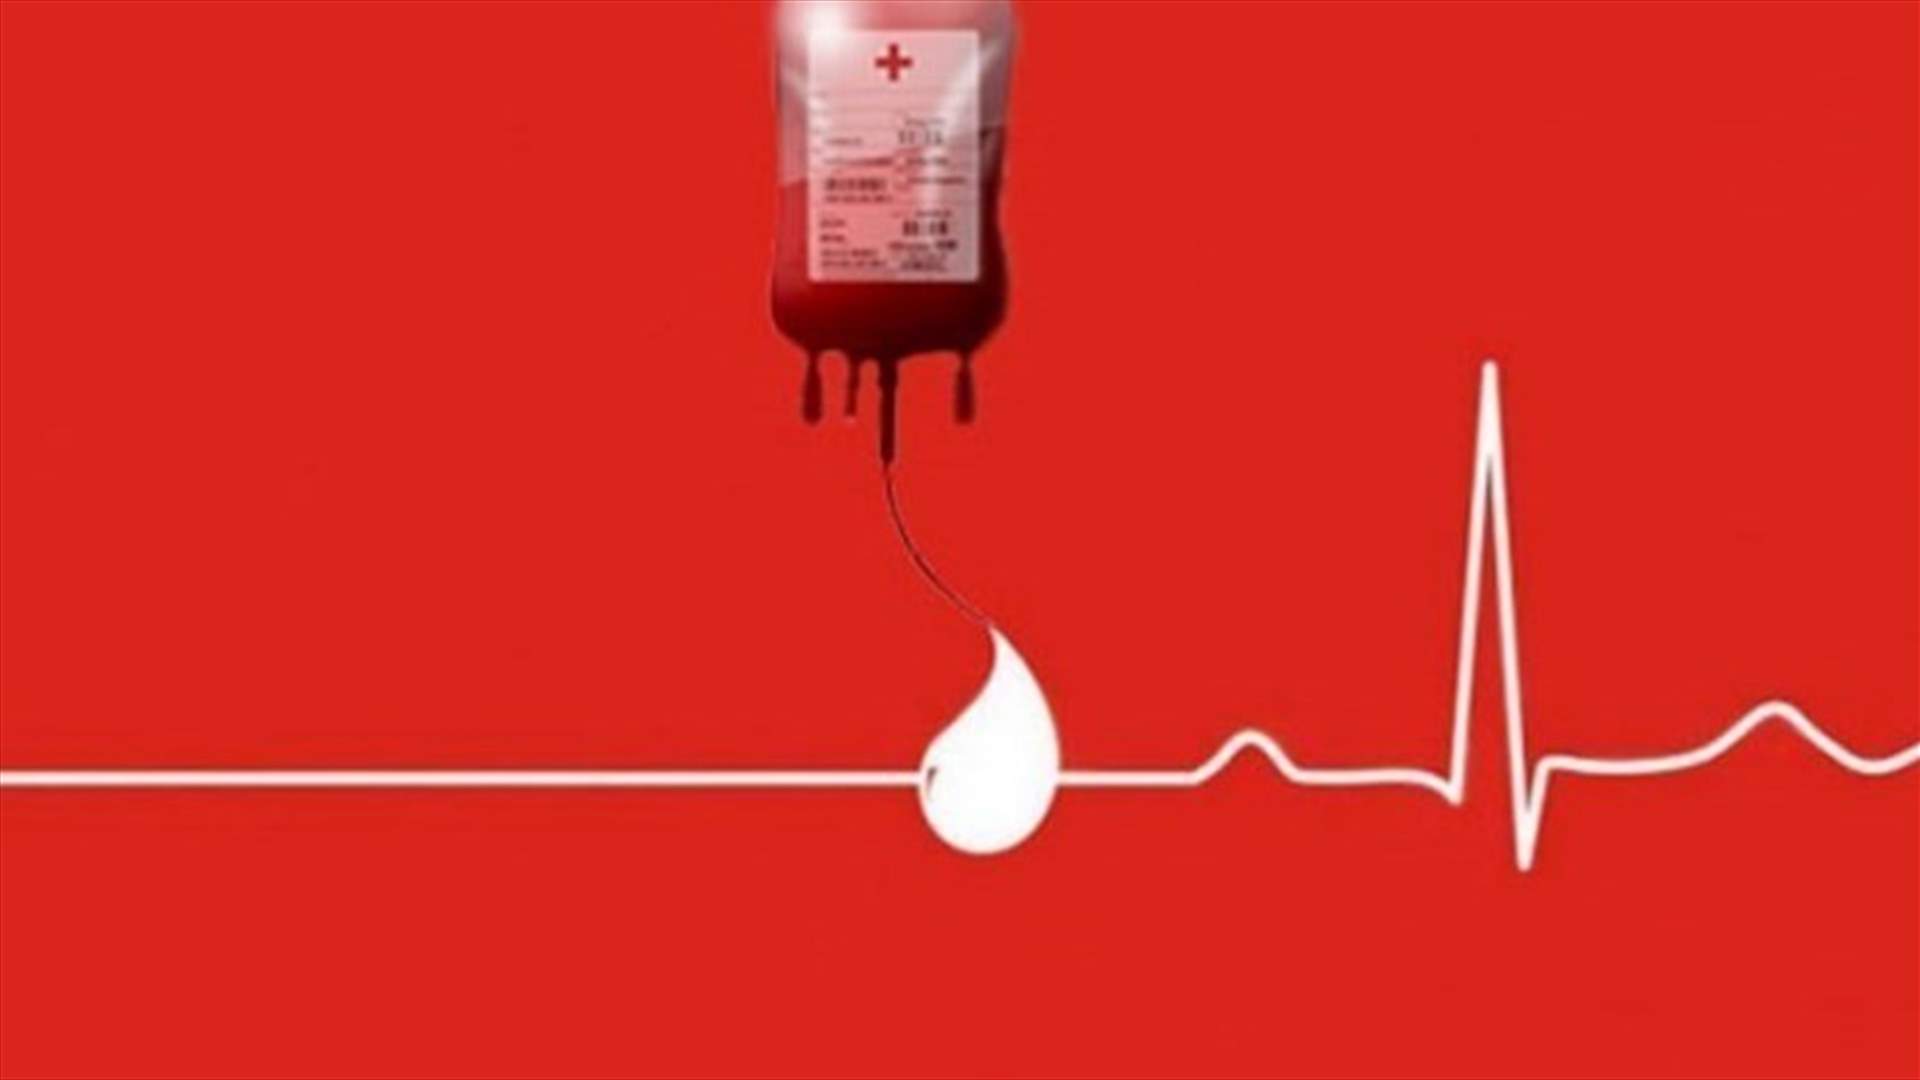 مريضة في مستشفى المعونات في جبيل بحاجة ماسة الى 3  وحدات دم من فئة A+... للتبرع الاتصال على 03117995